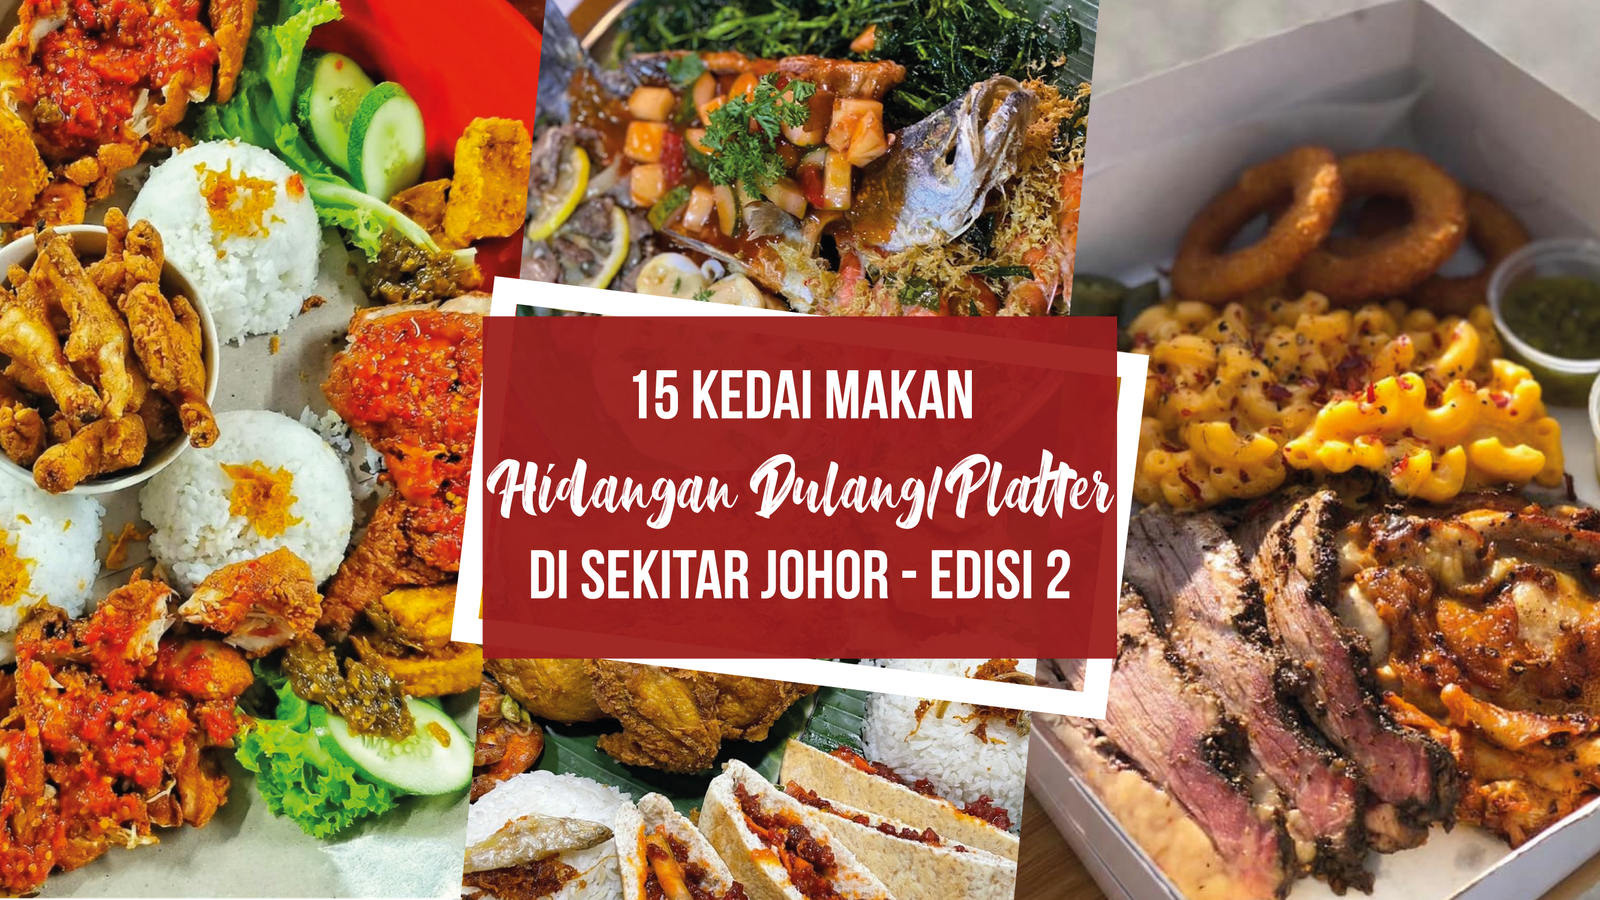 15 kedai makan hidangan Dulang/Platter istimewa ramadhan - Edisi 2